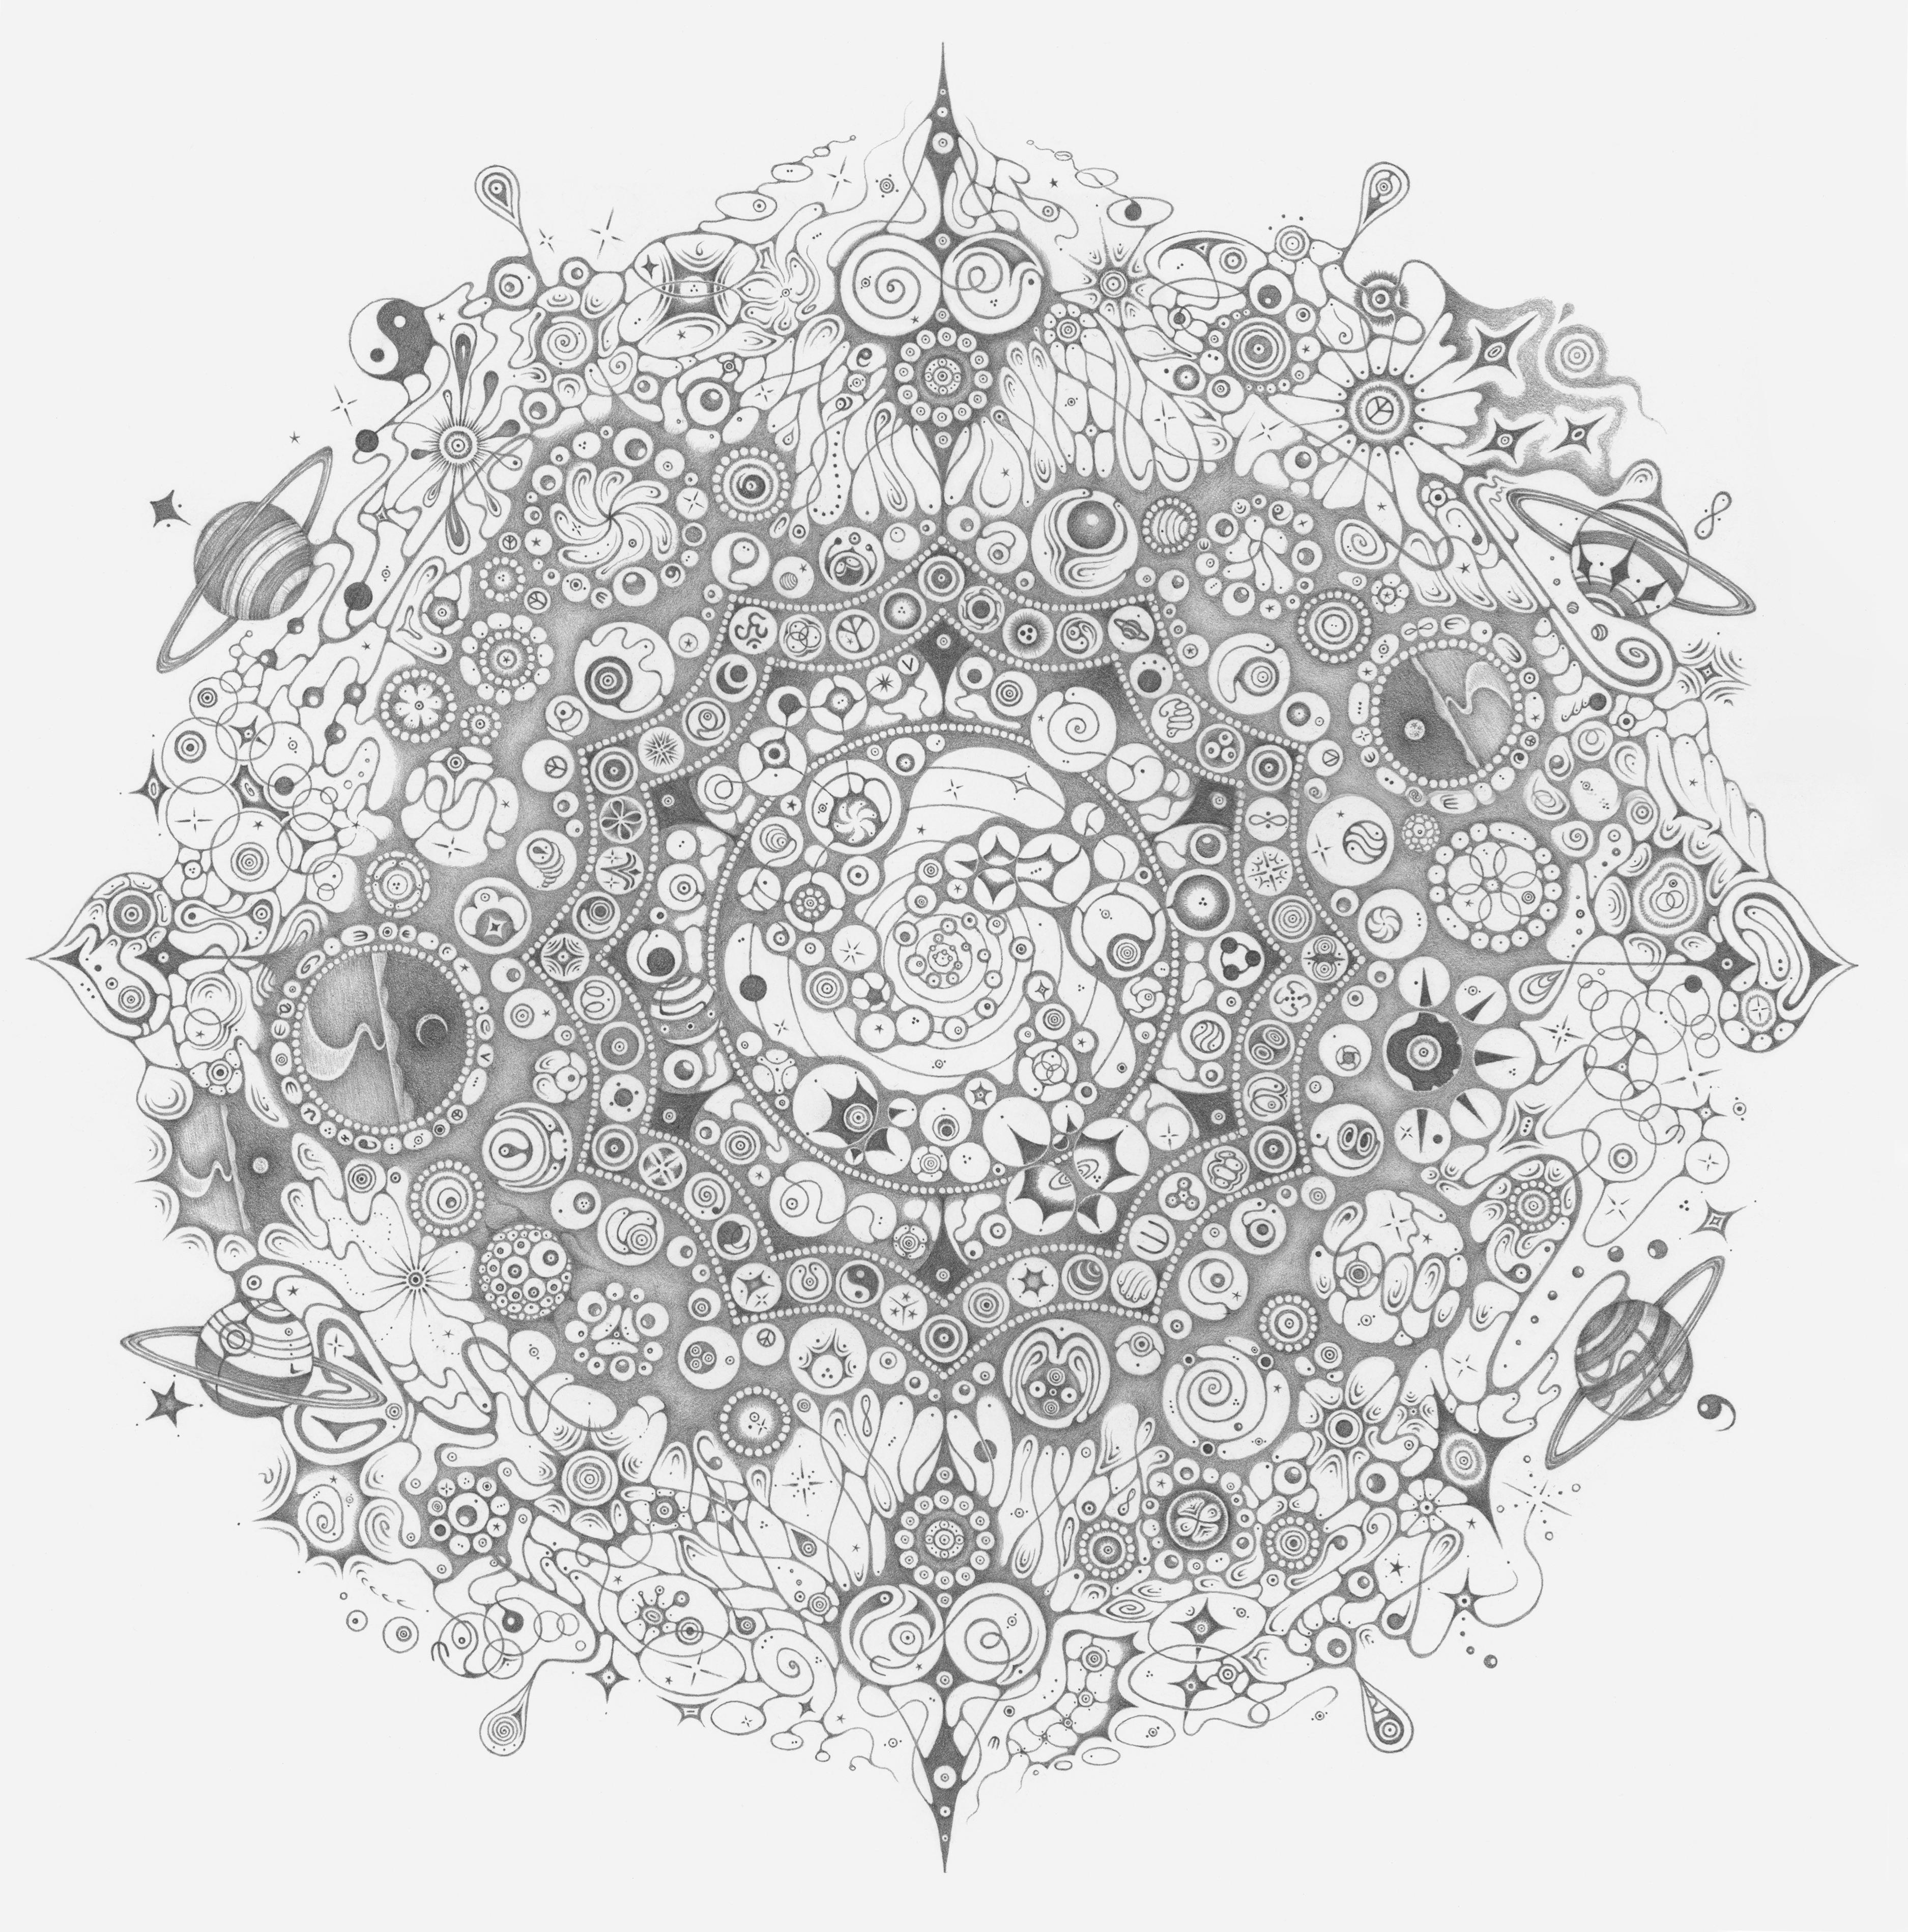 Michiyo Ihara Abstract Drawing - Snowflakes 150 Be, Planets, Spiritual Theme, Nature Mandala Pencil Drawing